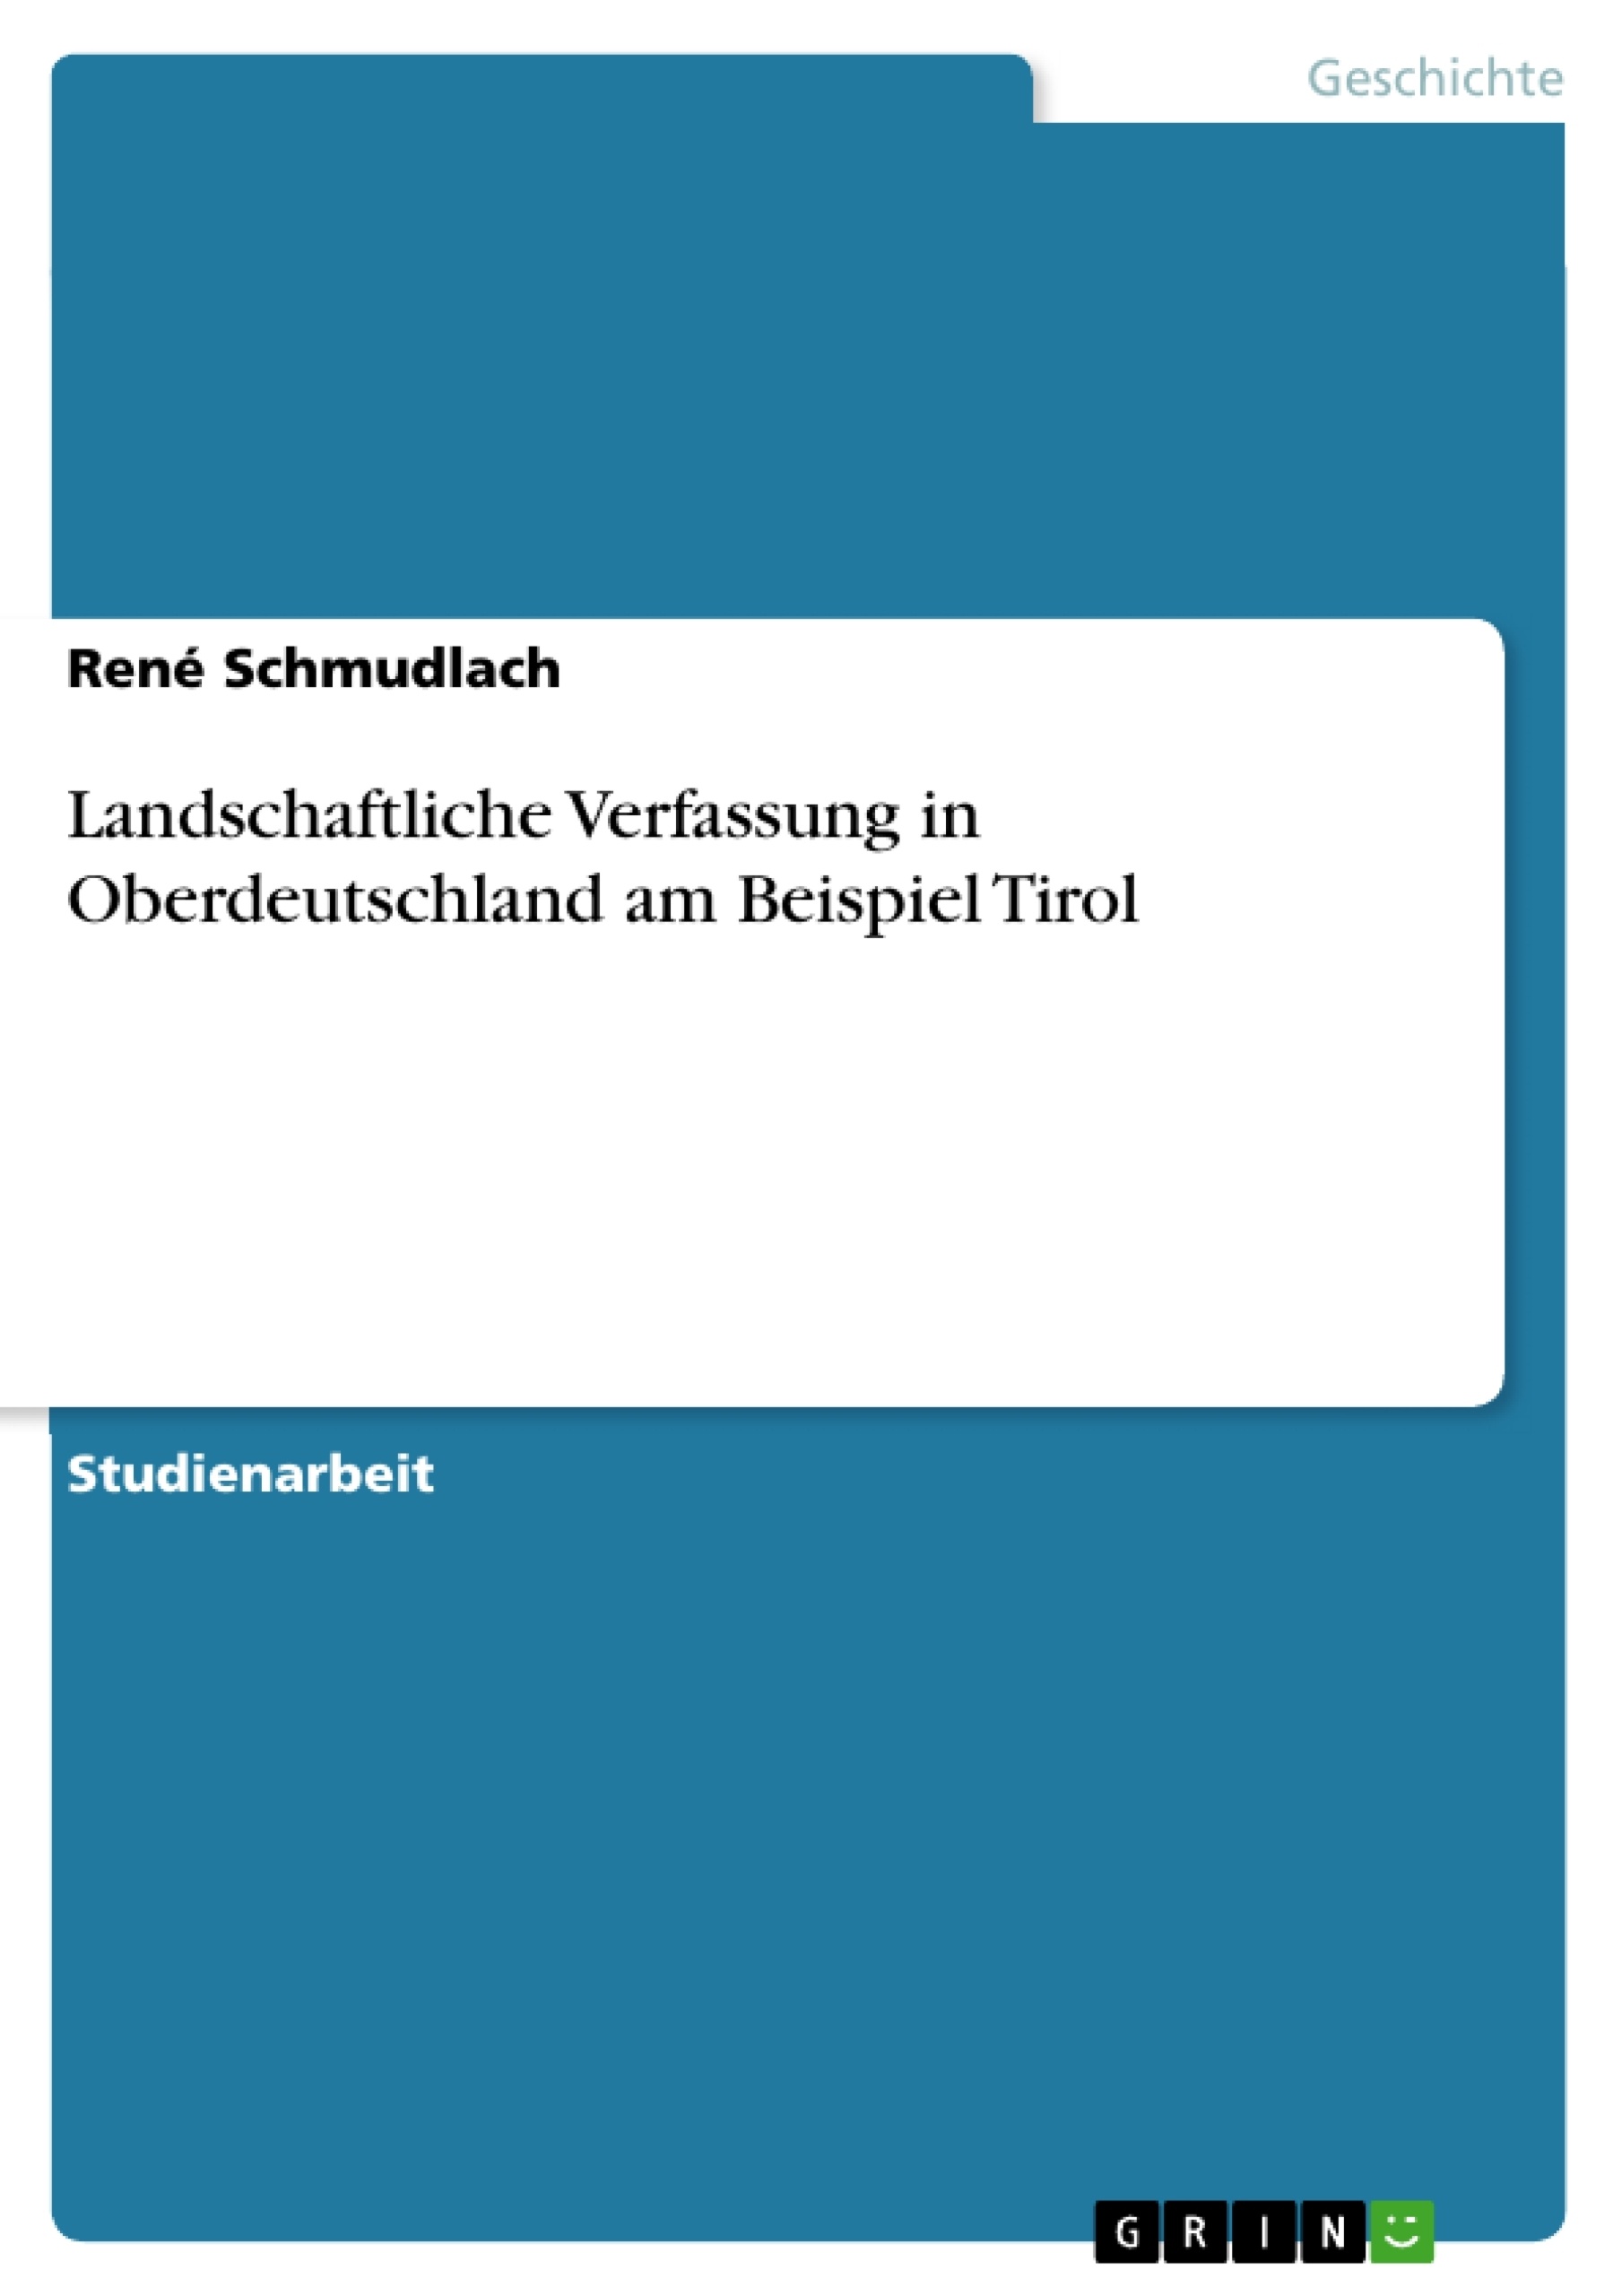 Titre: Landschaftliche Verfassung in Oberdeutschland am Beispiel Tirol